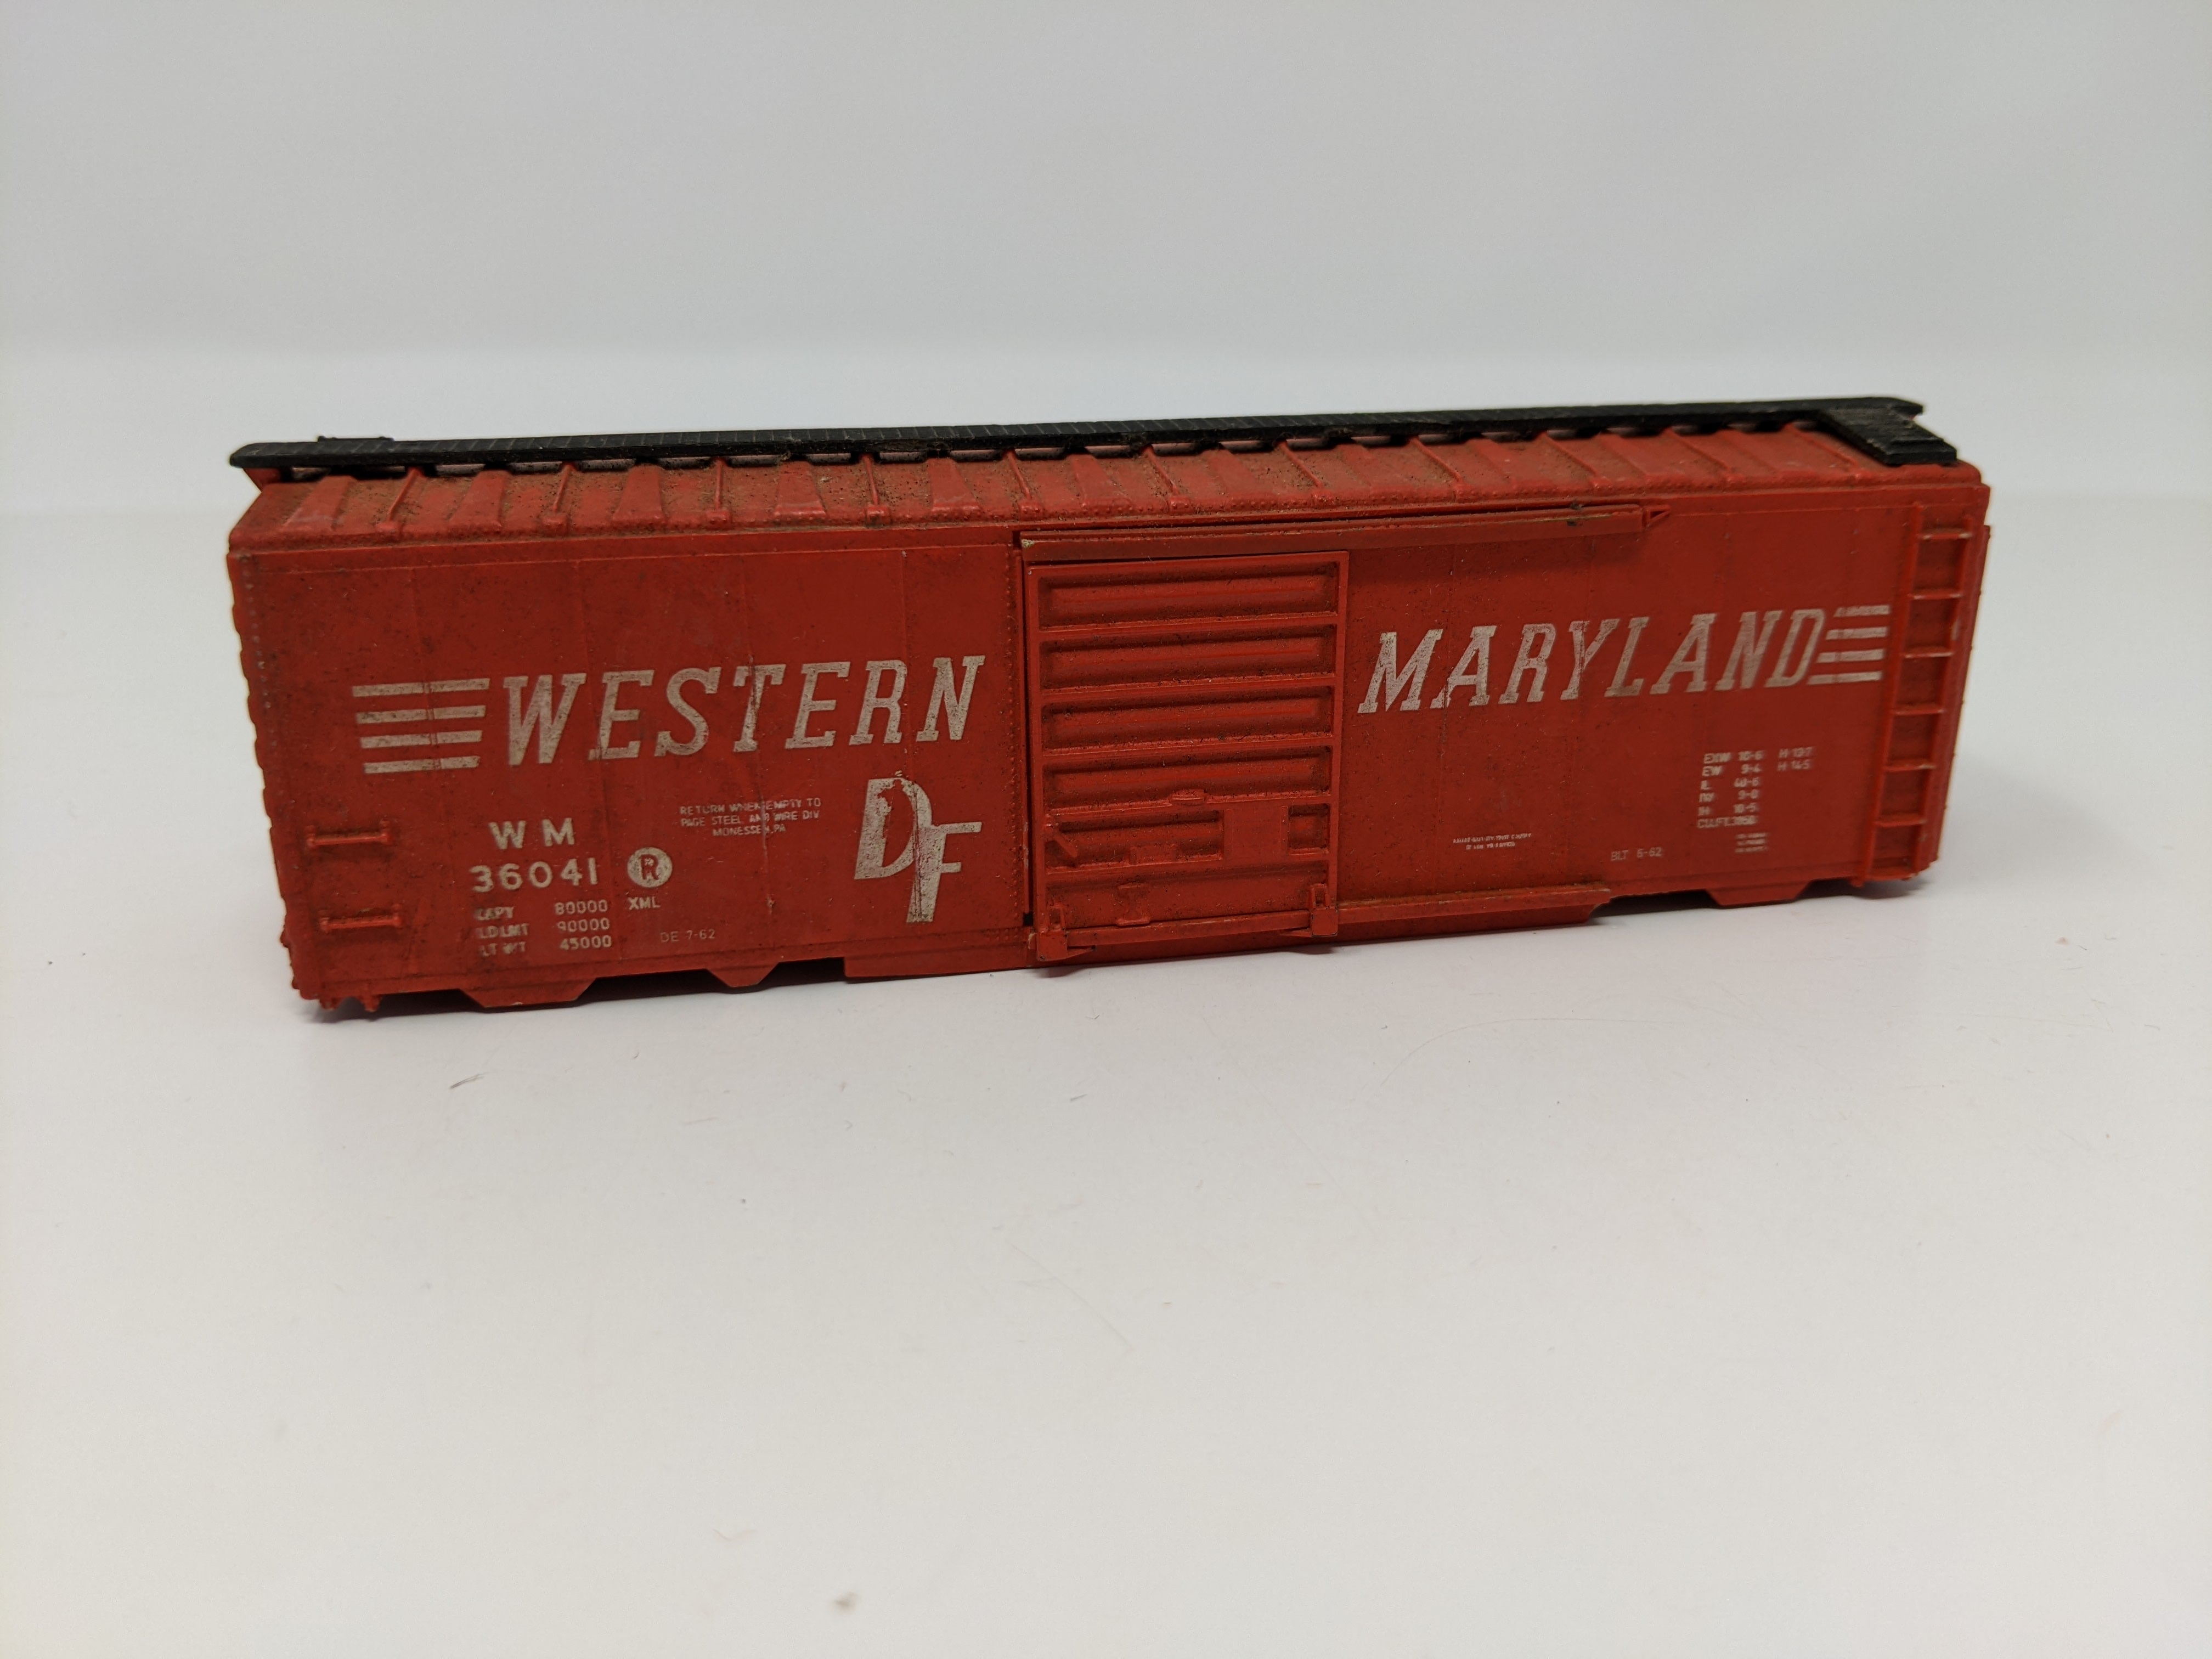 USED HO Scale, 40' Box Car Shell, Western Maryland WM #36041, Read Description